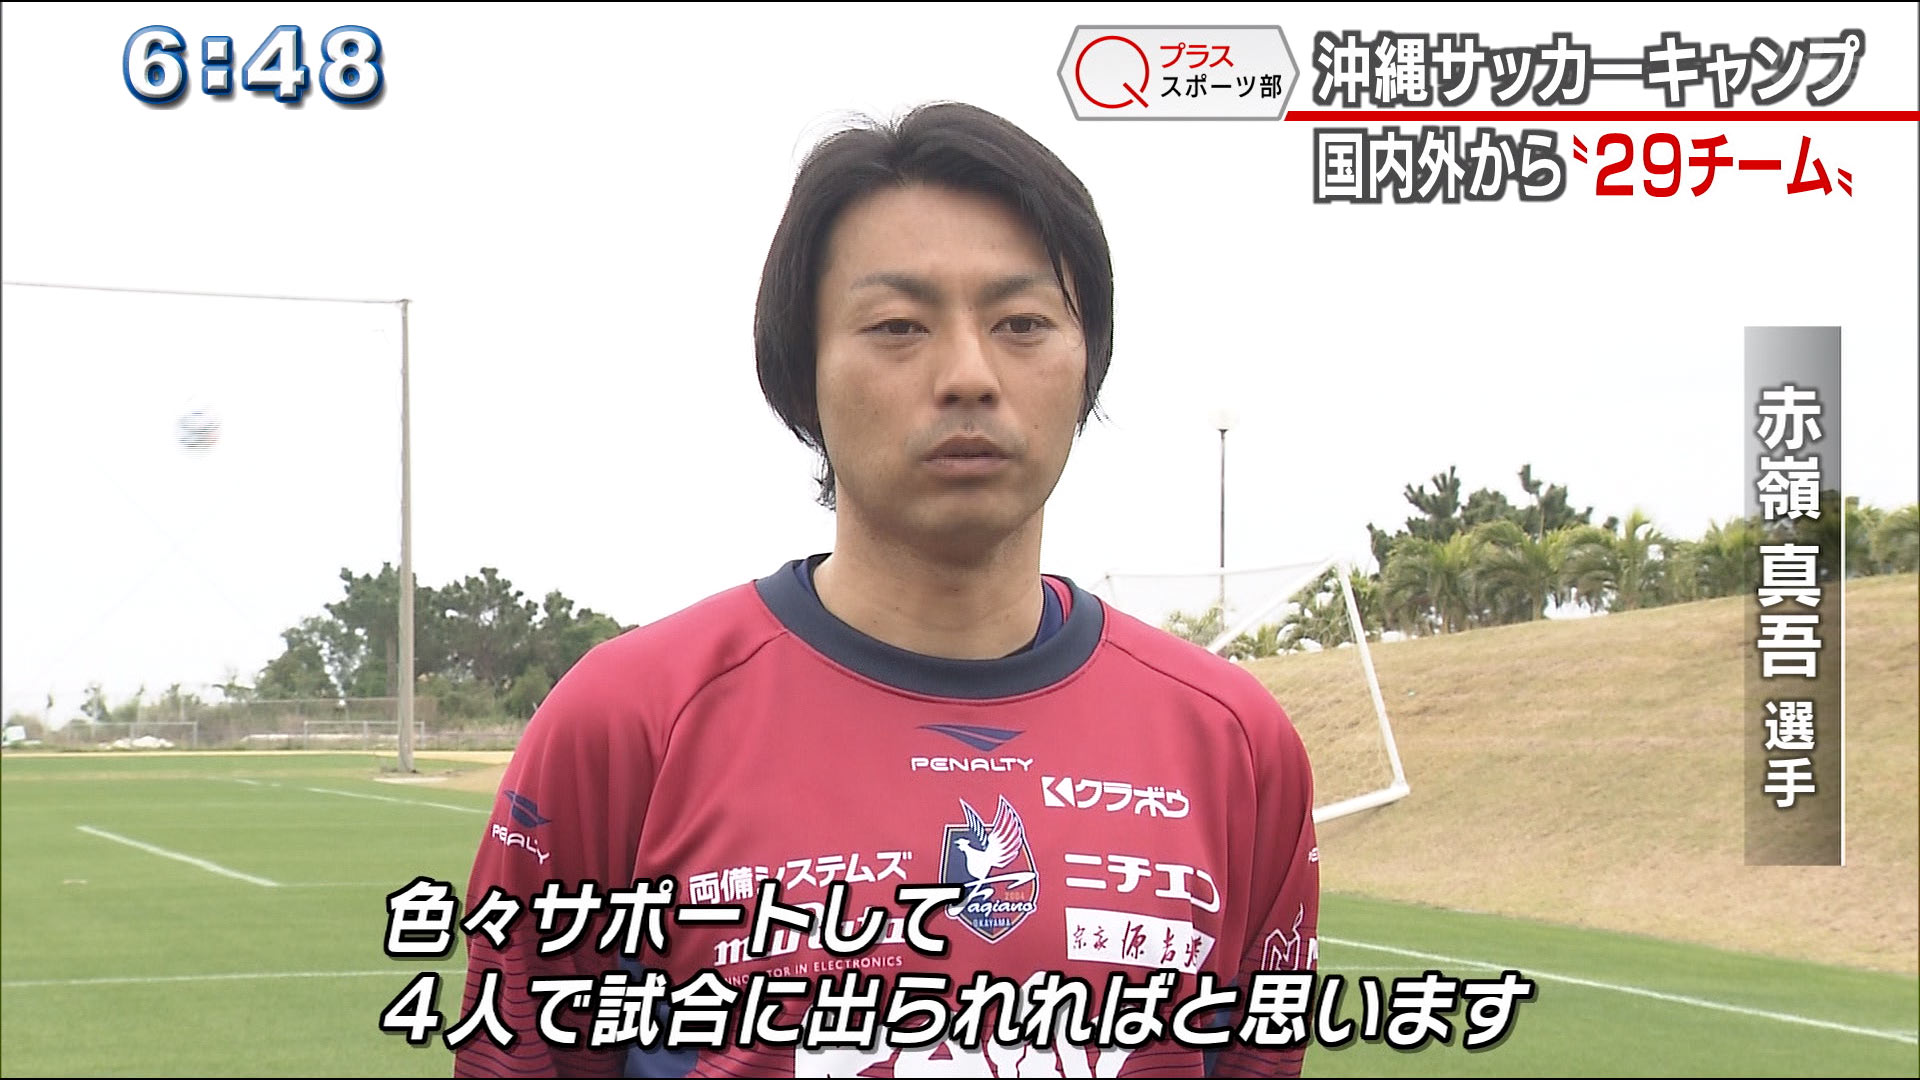 沖縄サッカーキャンプ 国内外から29チーム Qab News Headline